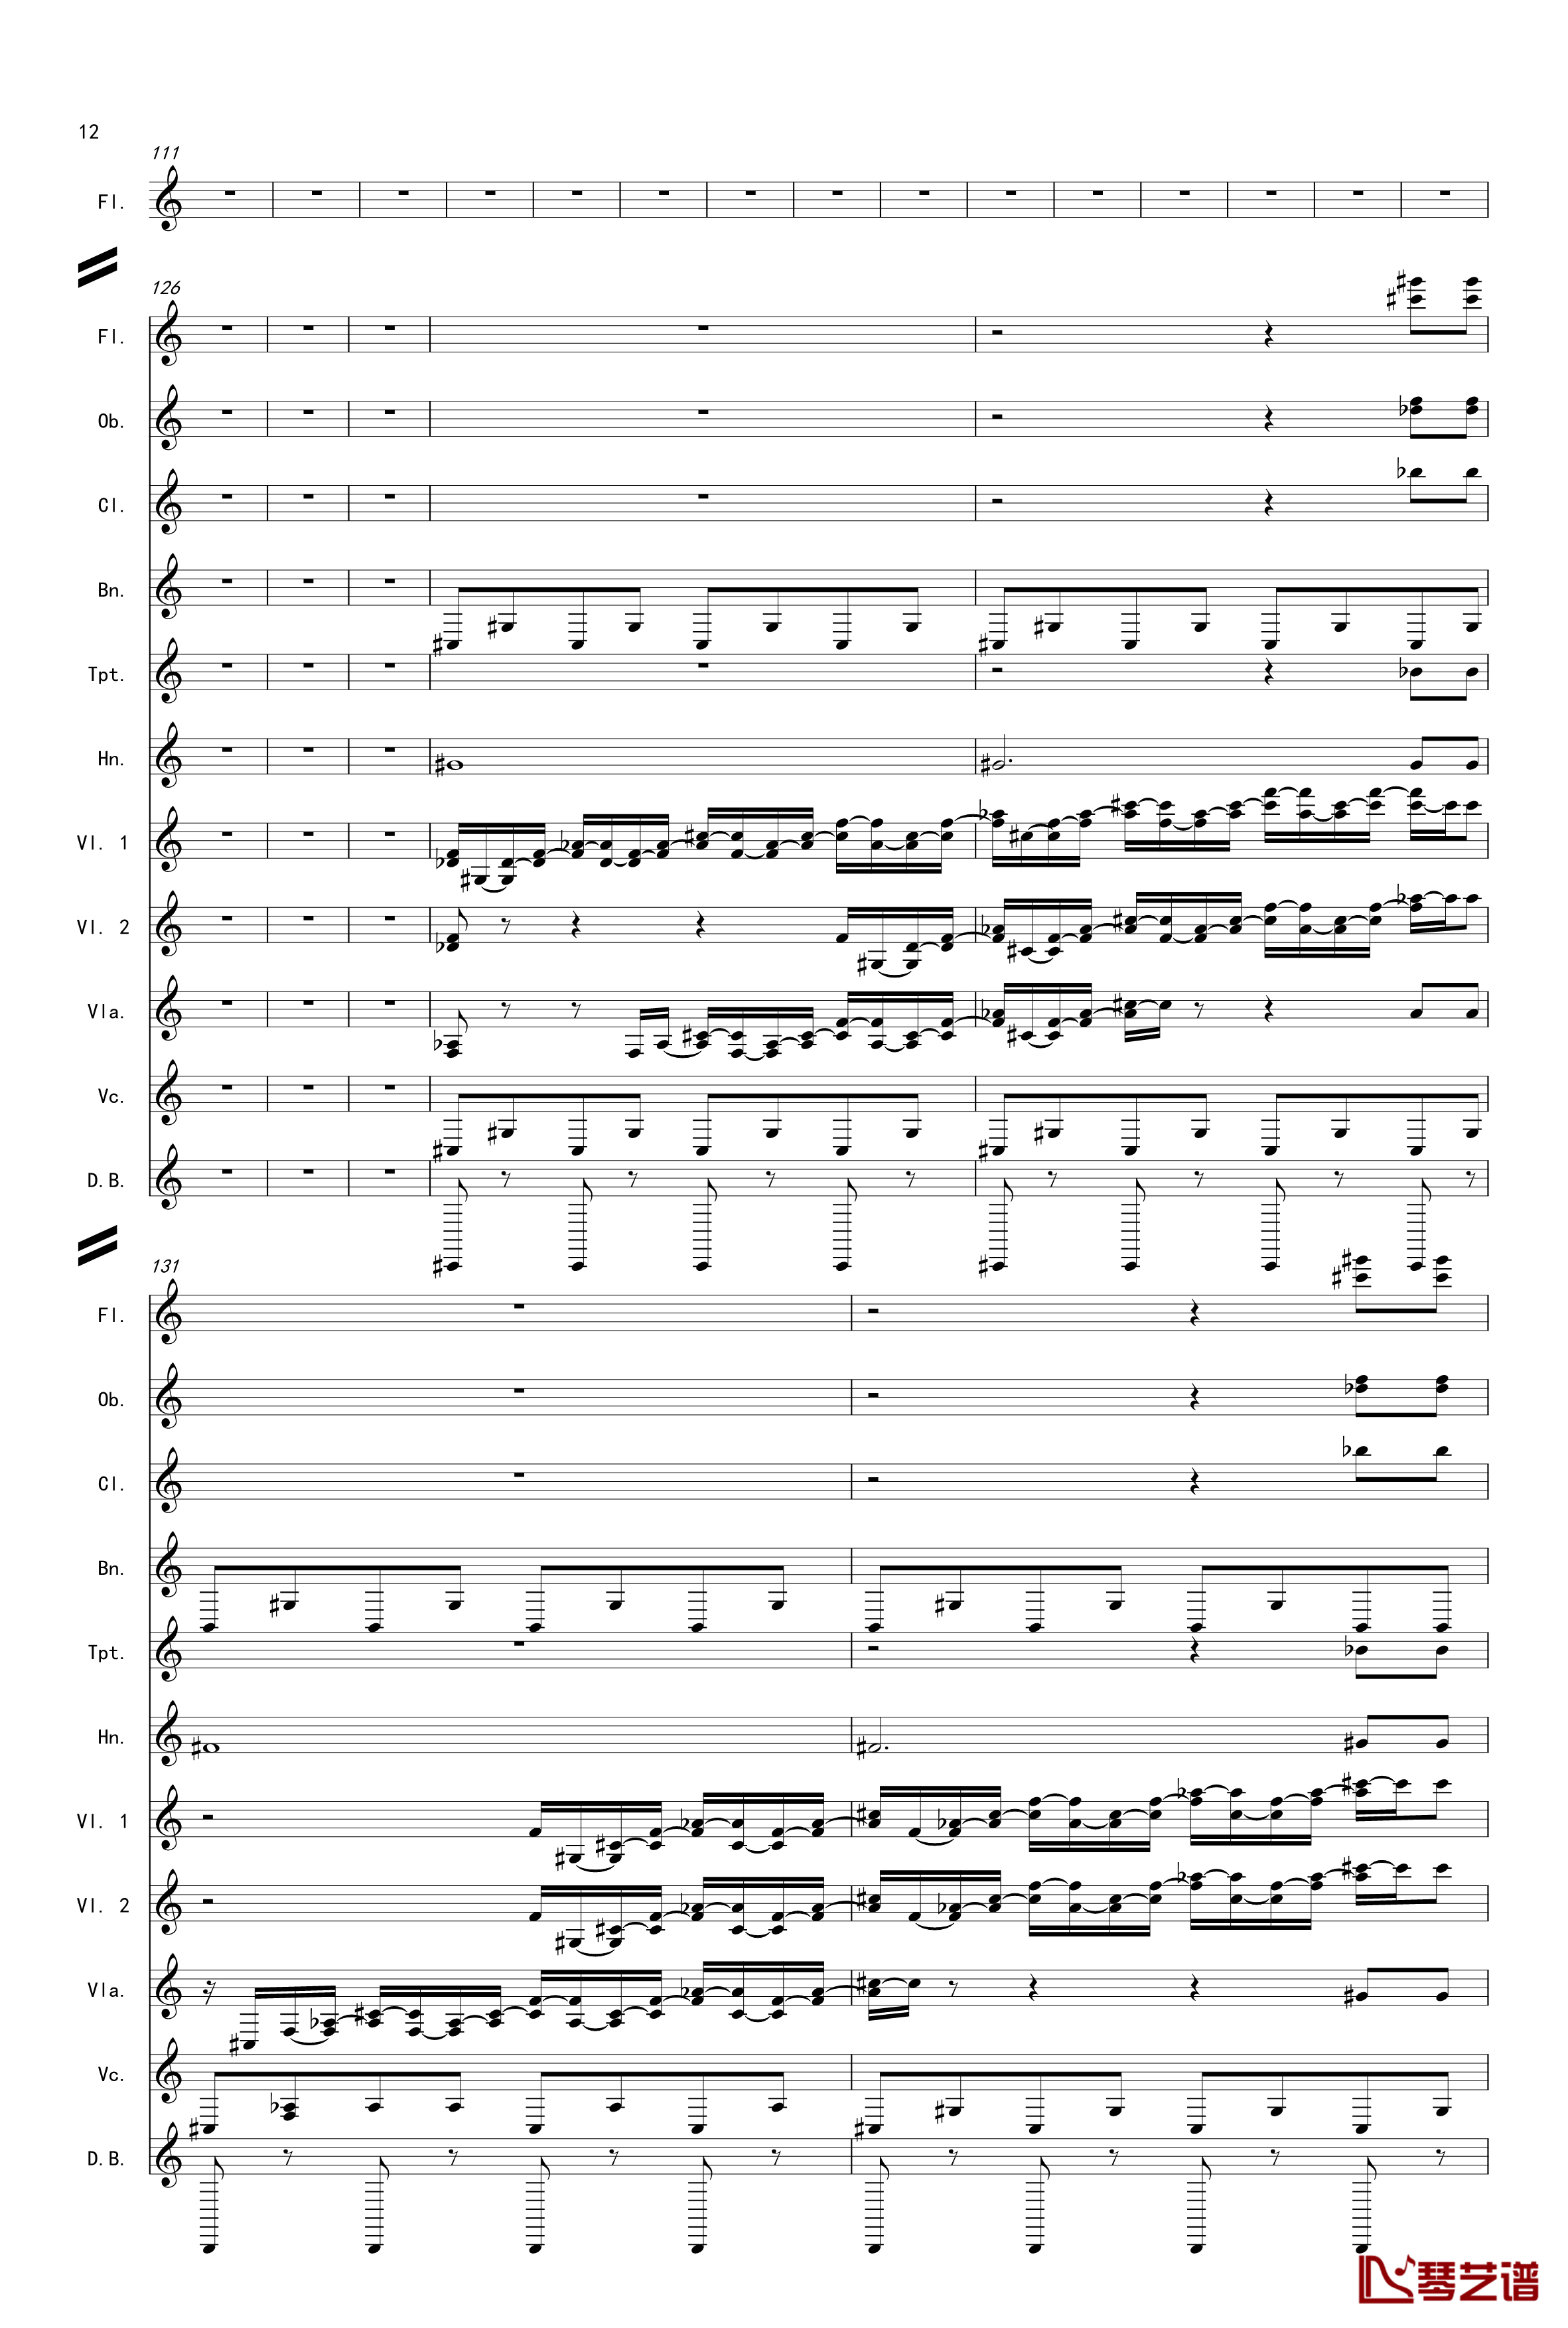 奏鸣曲之交响第14首Ⅲ钢琴谱-贝多芬-beethoven12